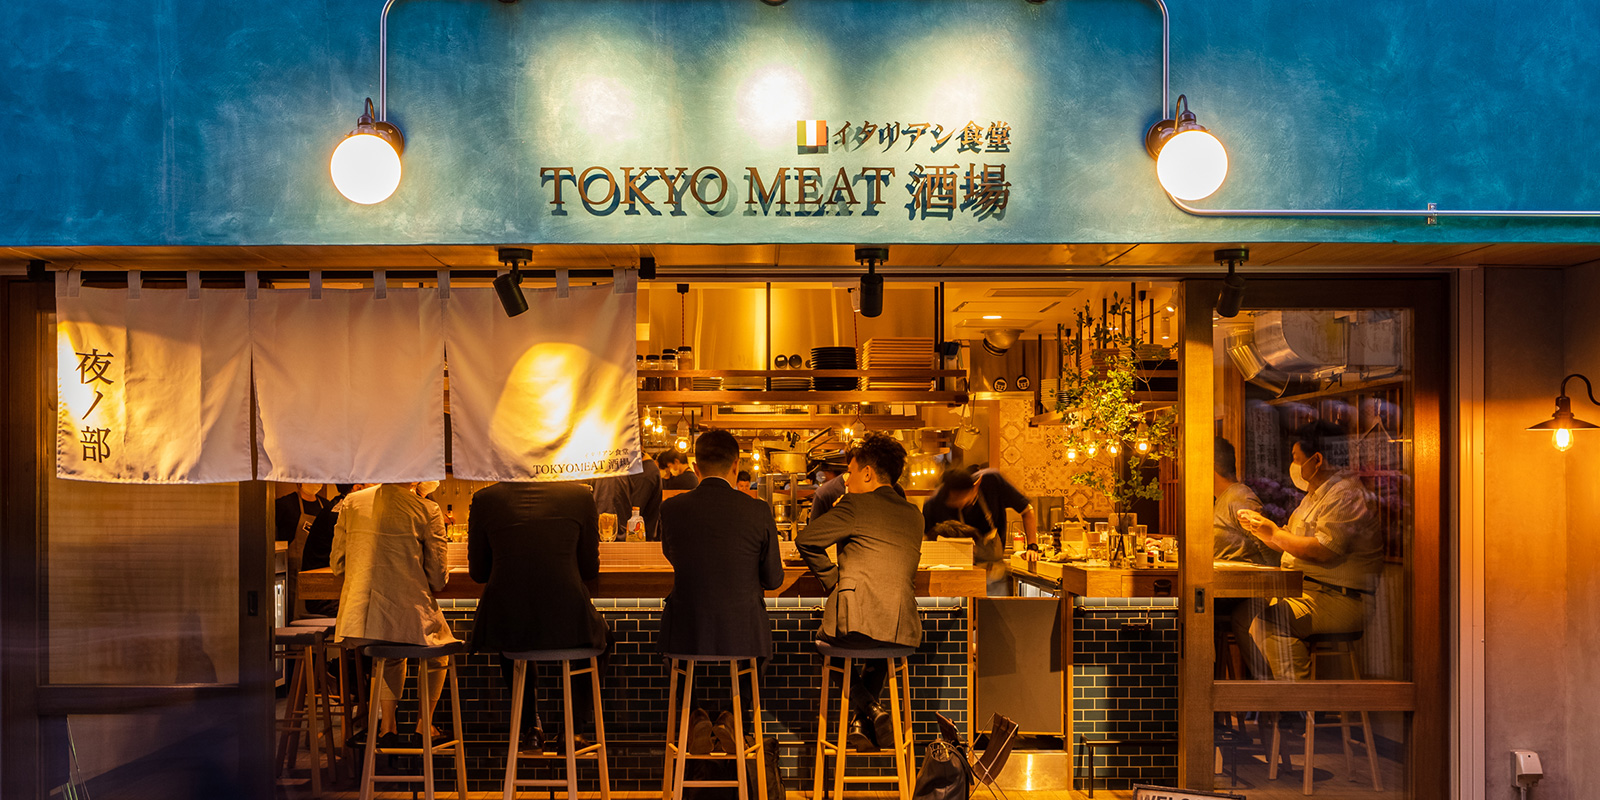 公式 Tokyo Meat 酒場 練馬店 昼はパスタ 夜はイタリア小皿料理とお酒を楽しむ練馬のちょっと良い酒場